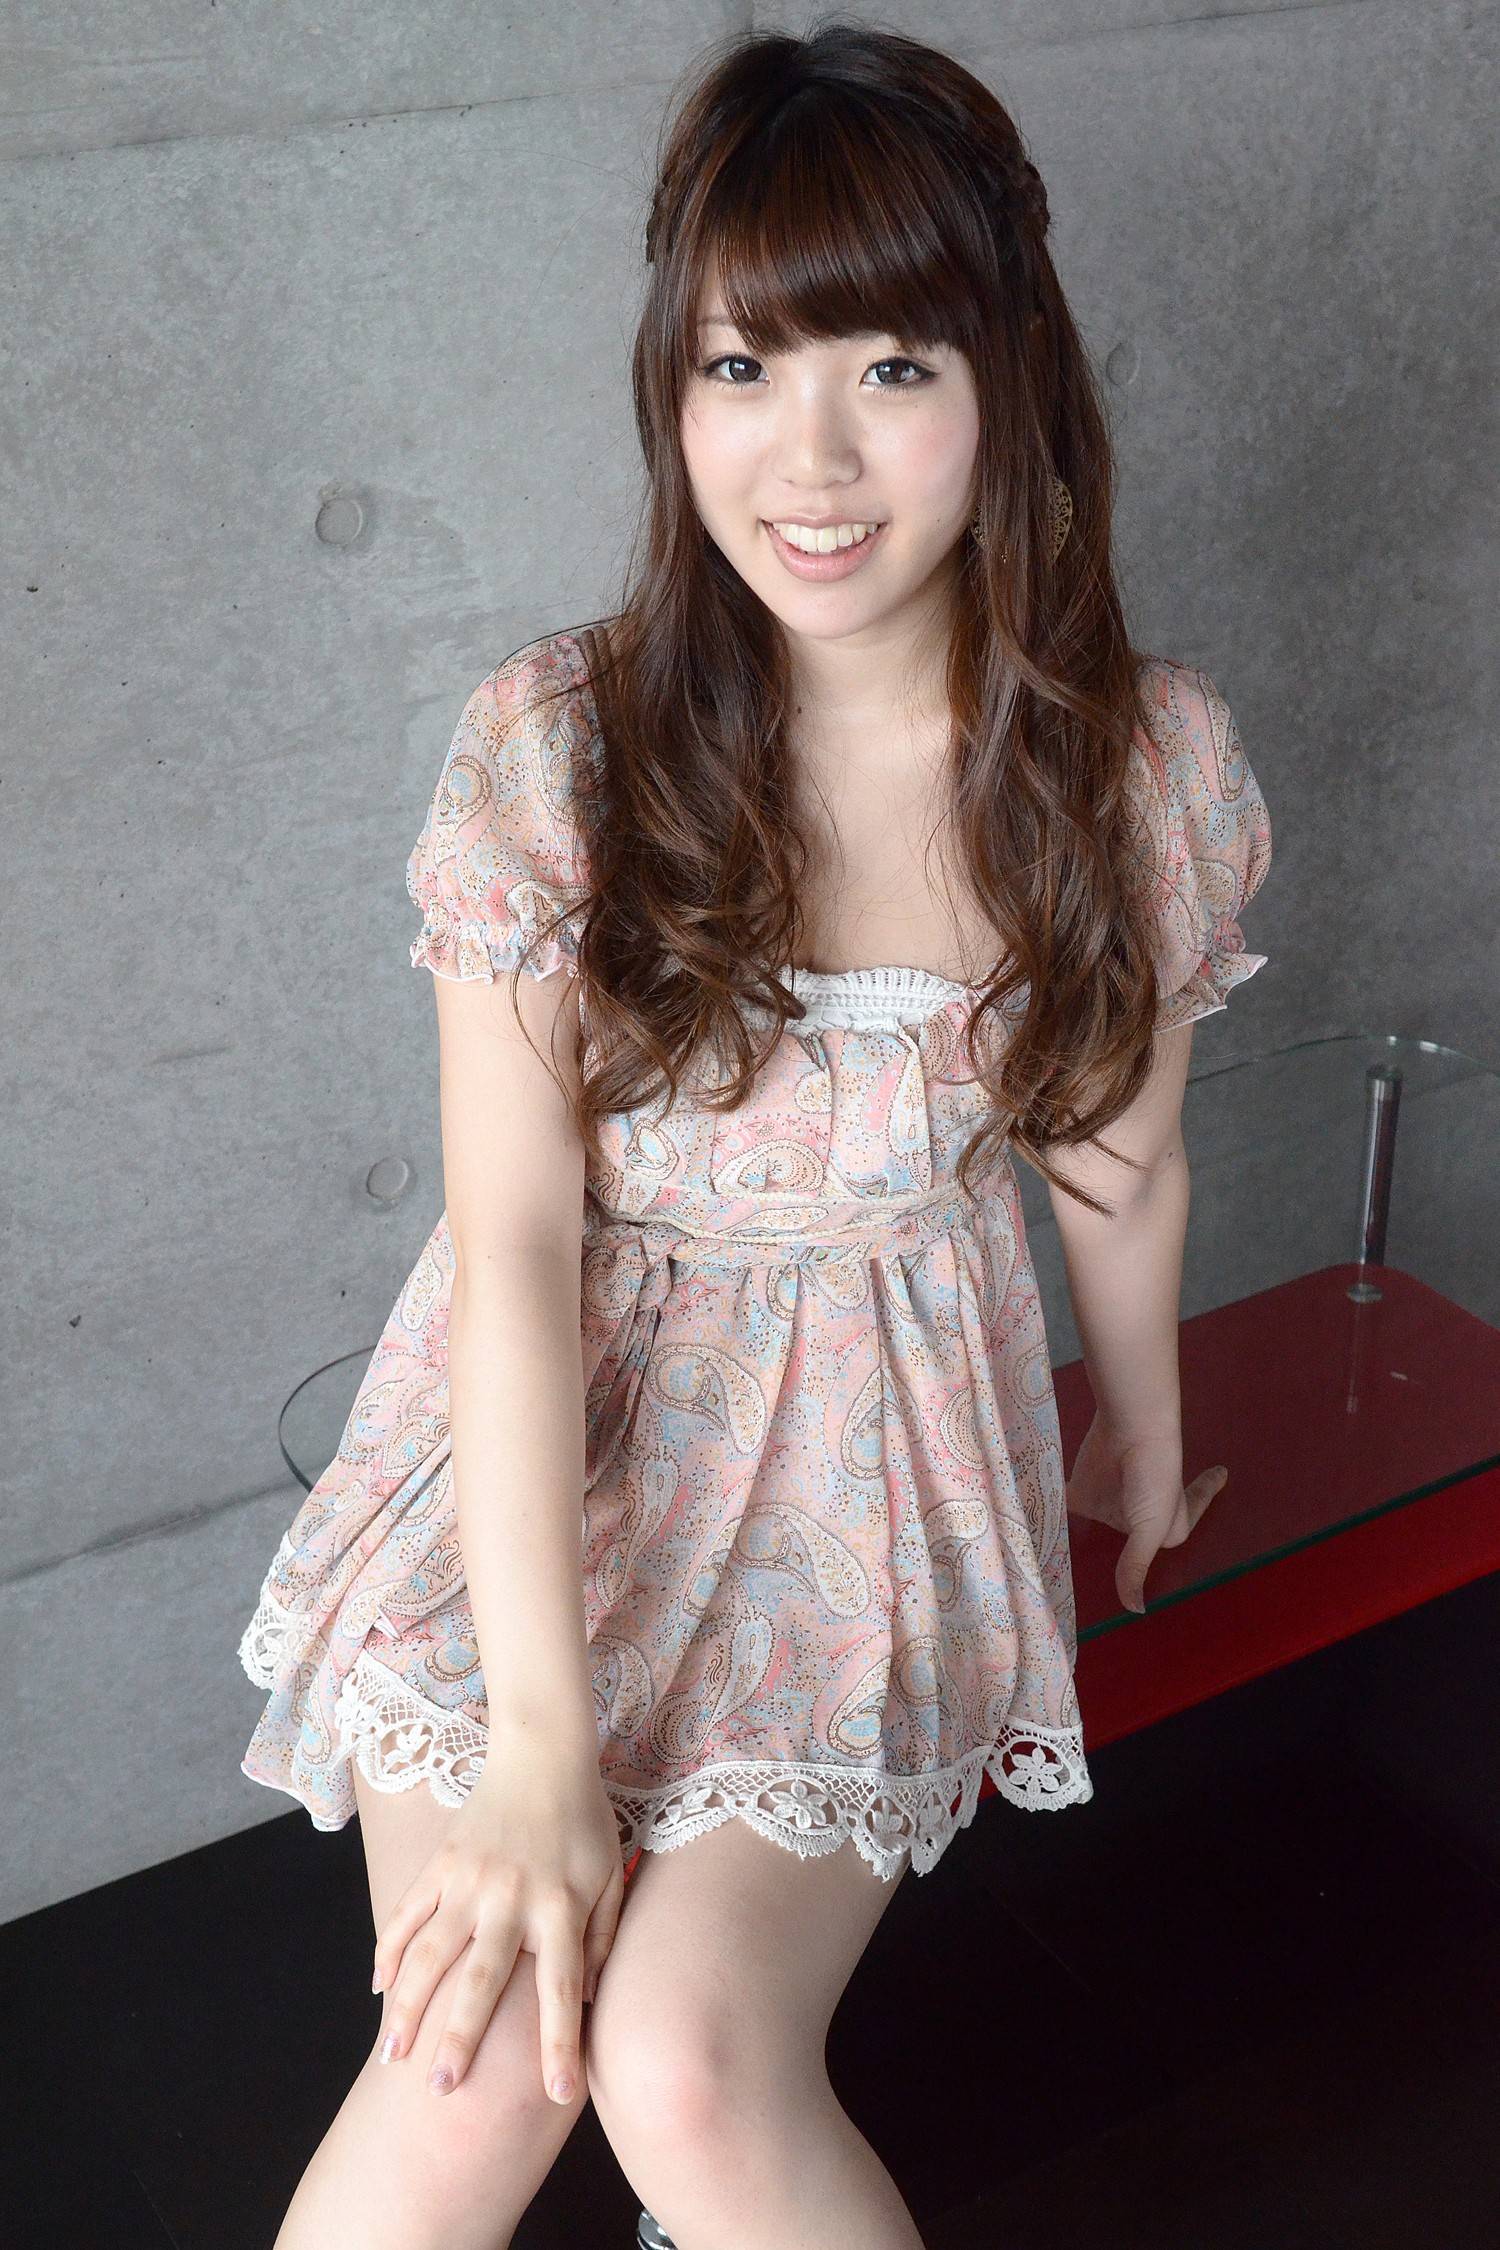 Japanese beauty beautiful girl